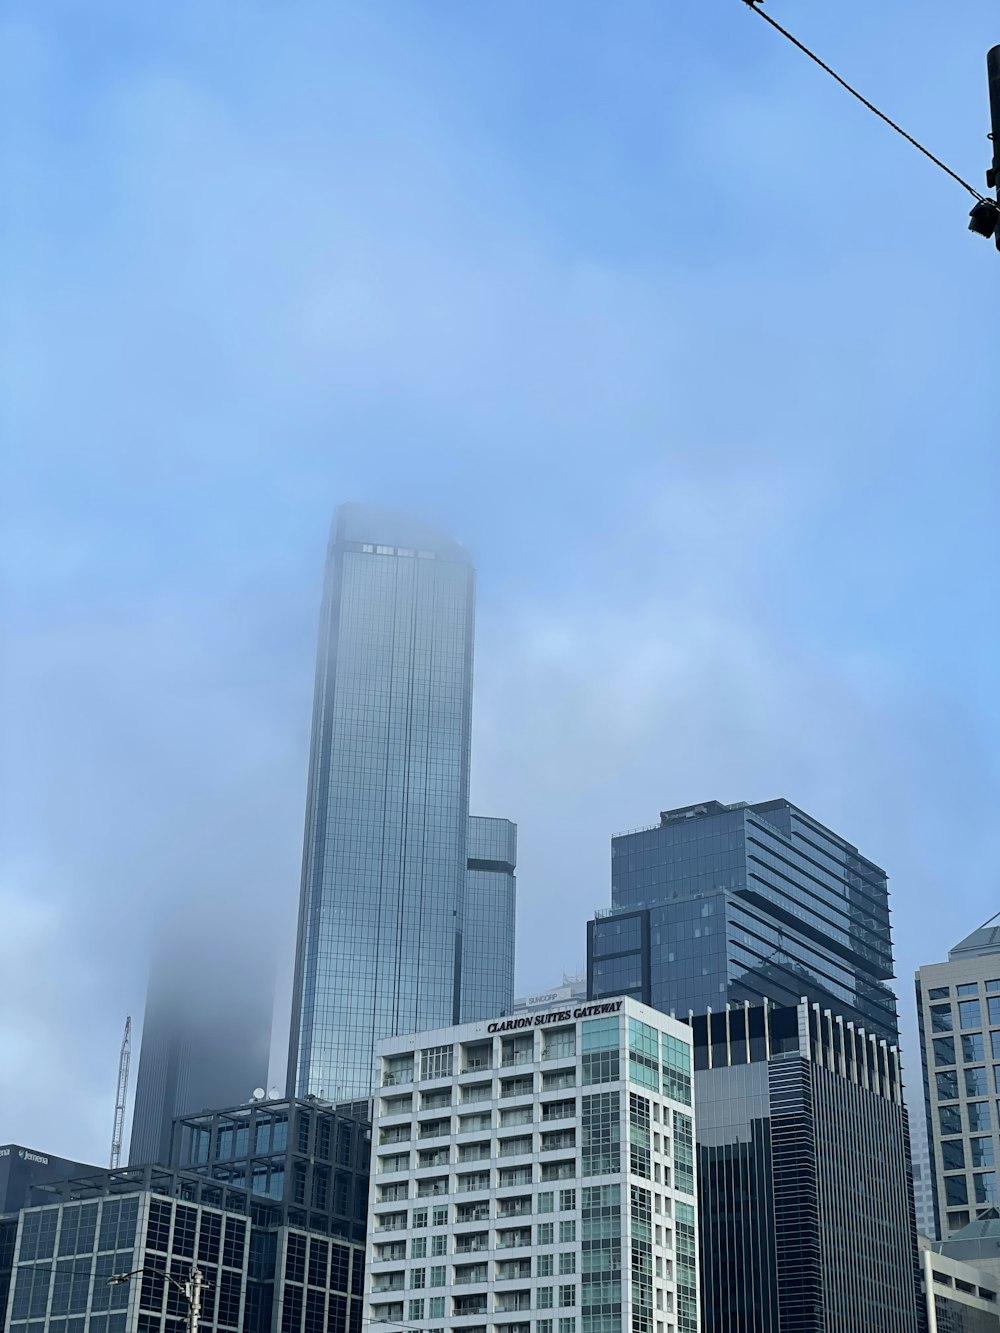 고층 건물과 신호등이 있는 도시의 모습